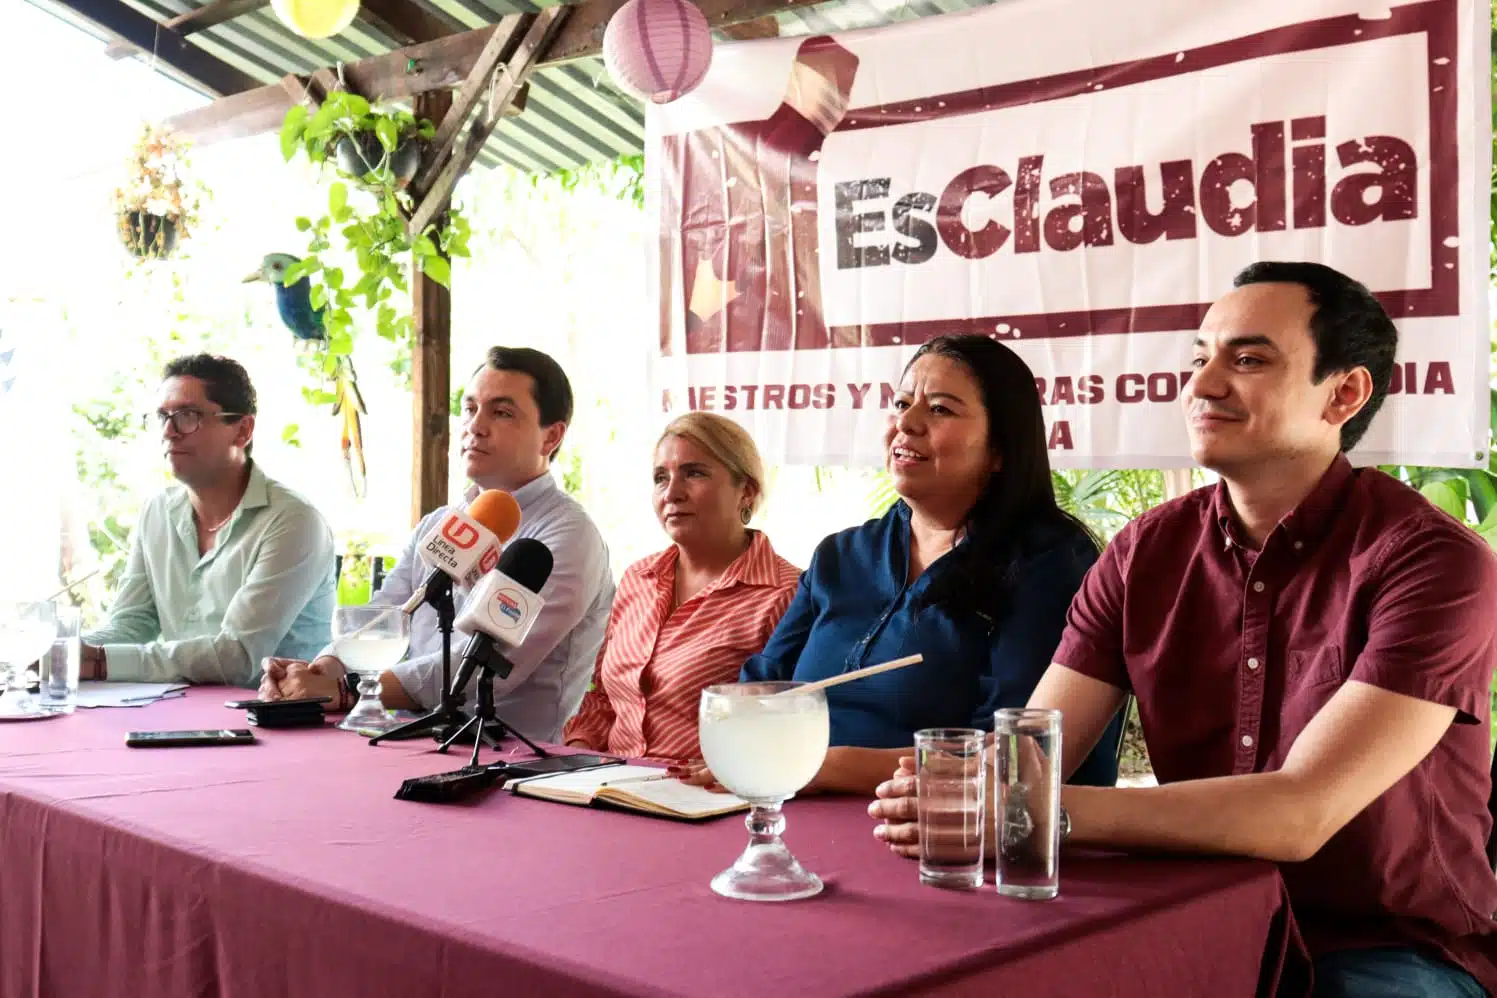 Encuentro de representantes de Es Claudia con jóvenes y maestros de los municipios de El Fuerte y Choix